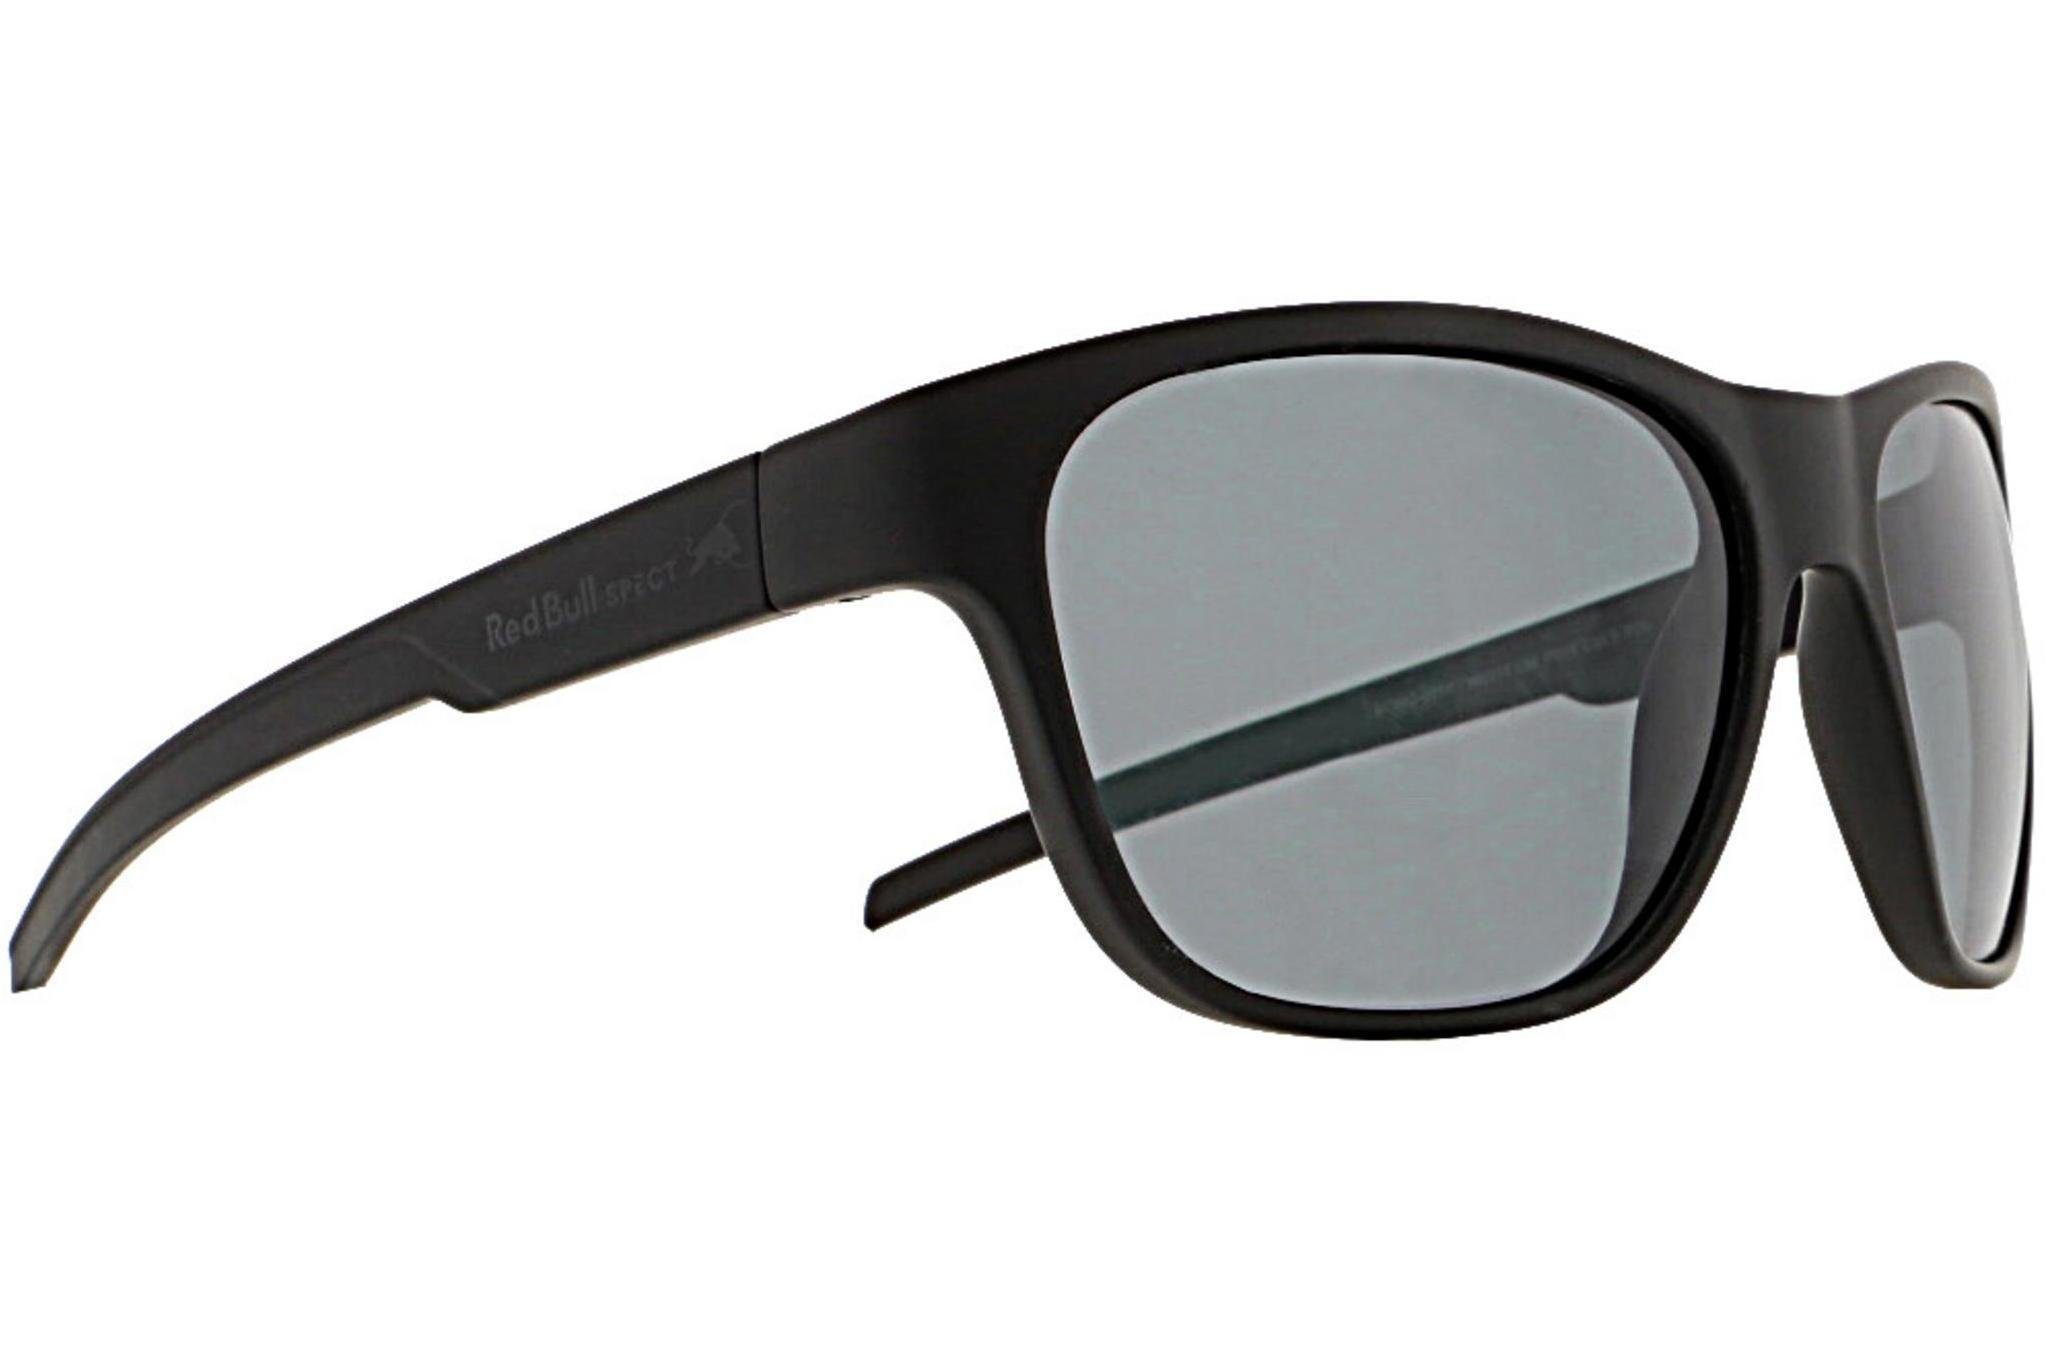 Red Bull Spect Sonnenbrille »SONIC« online kaufen | OTTO